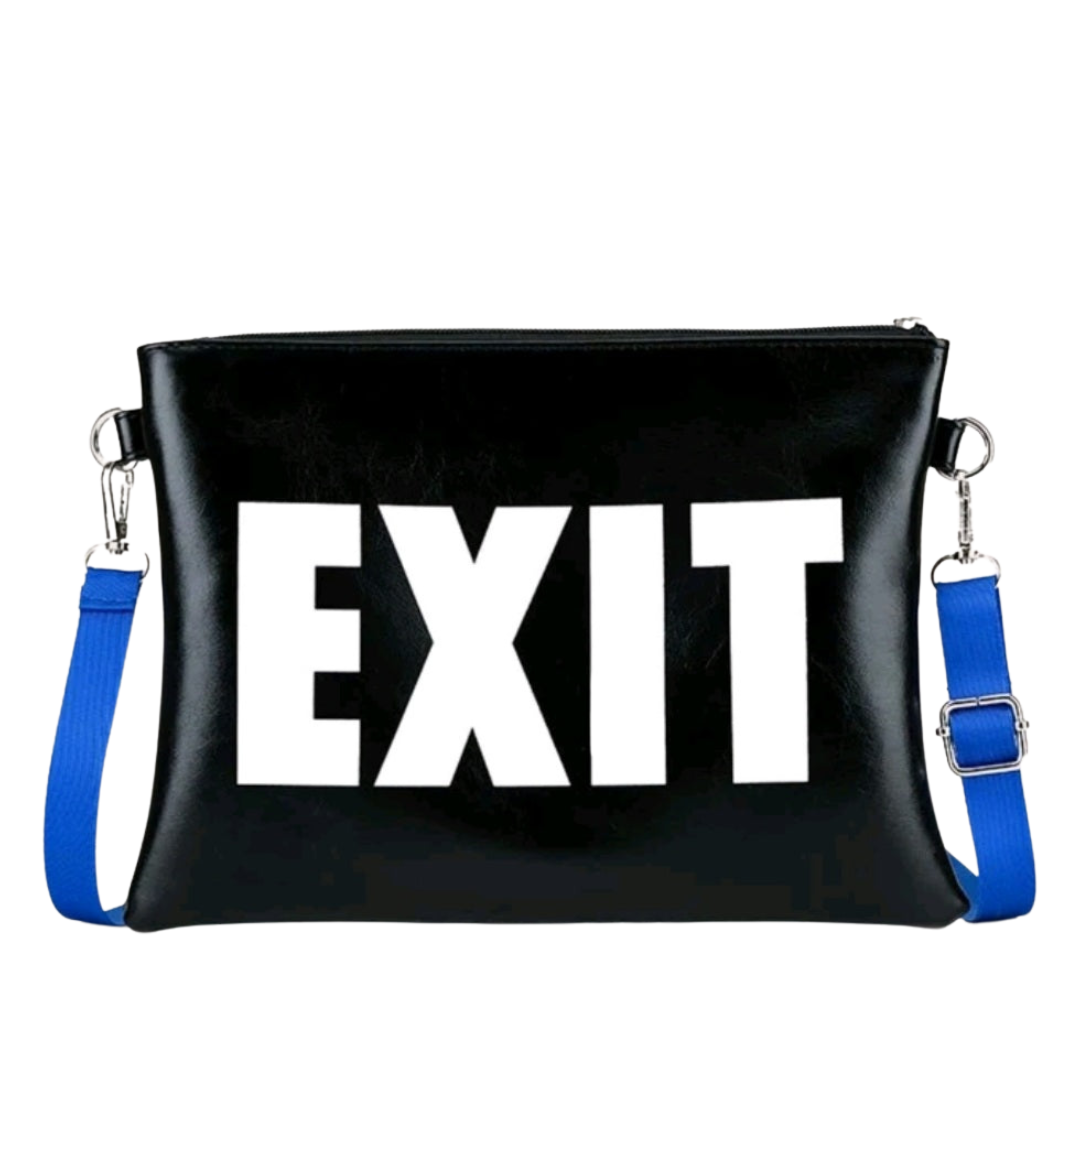 Exit Fashion Clutch Bag